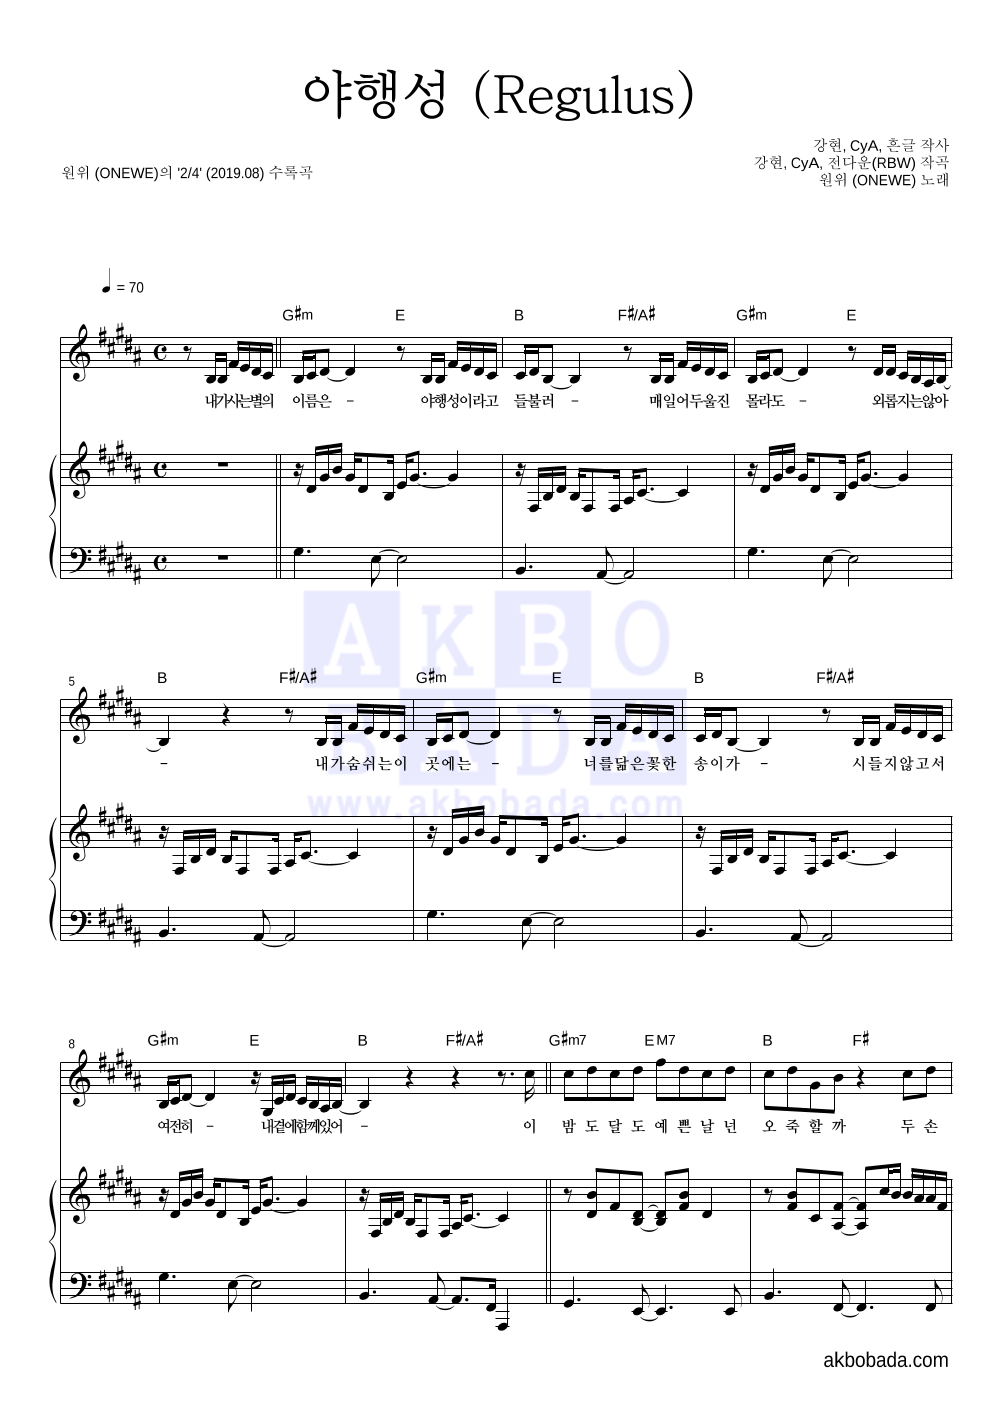 원위 (ONEWE) - 야행성 (Regulus) 피아노 3단 악보 